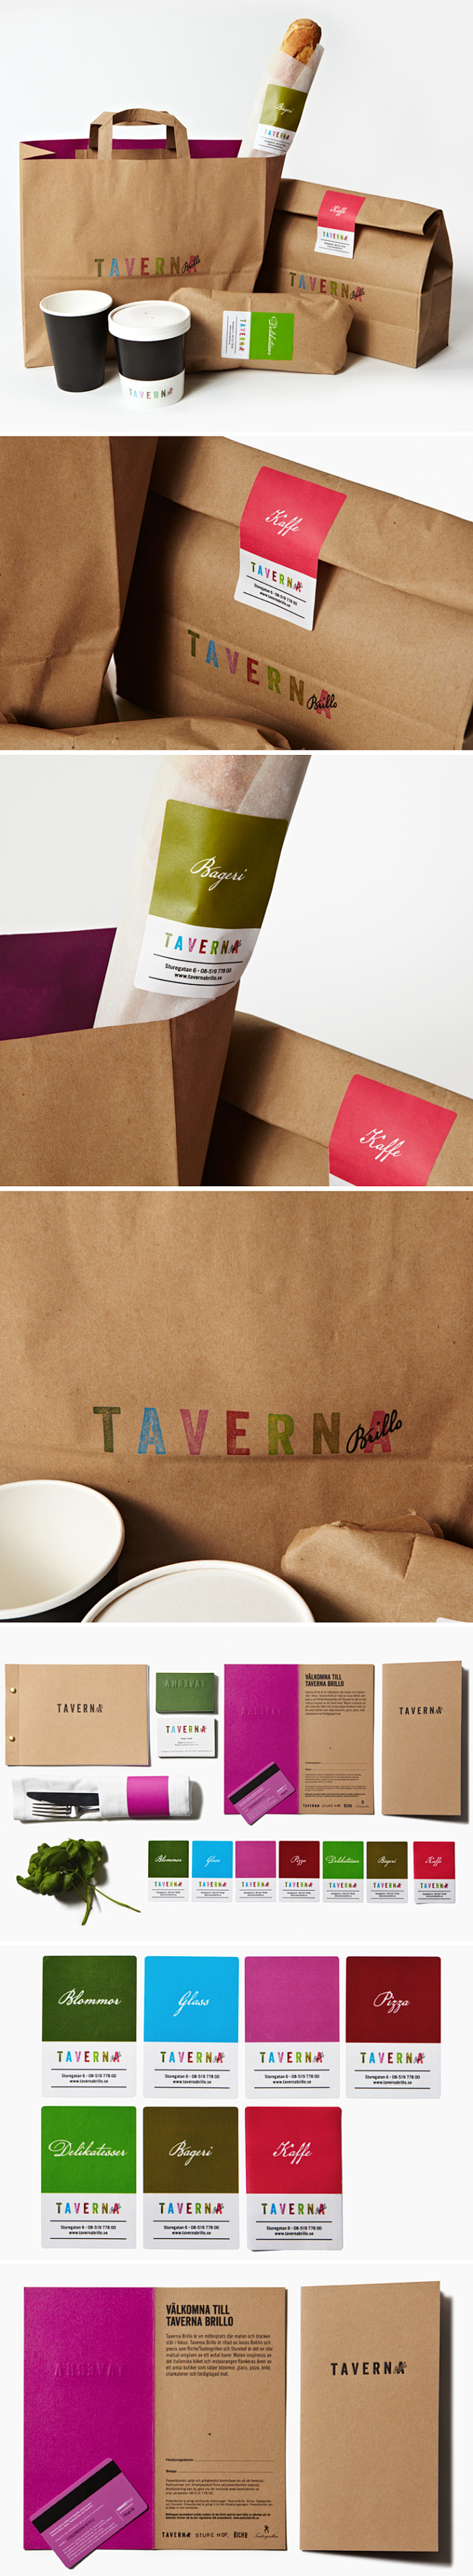 Taverna包装设计 #采集大赛#